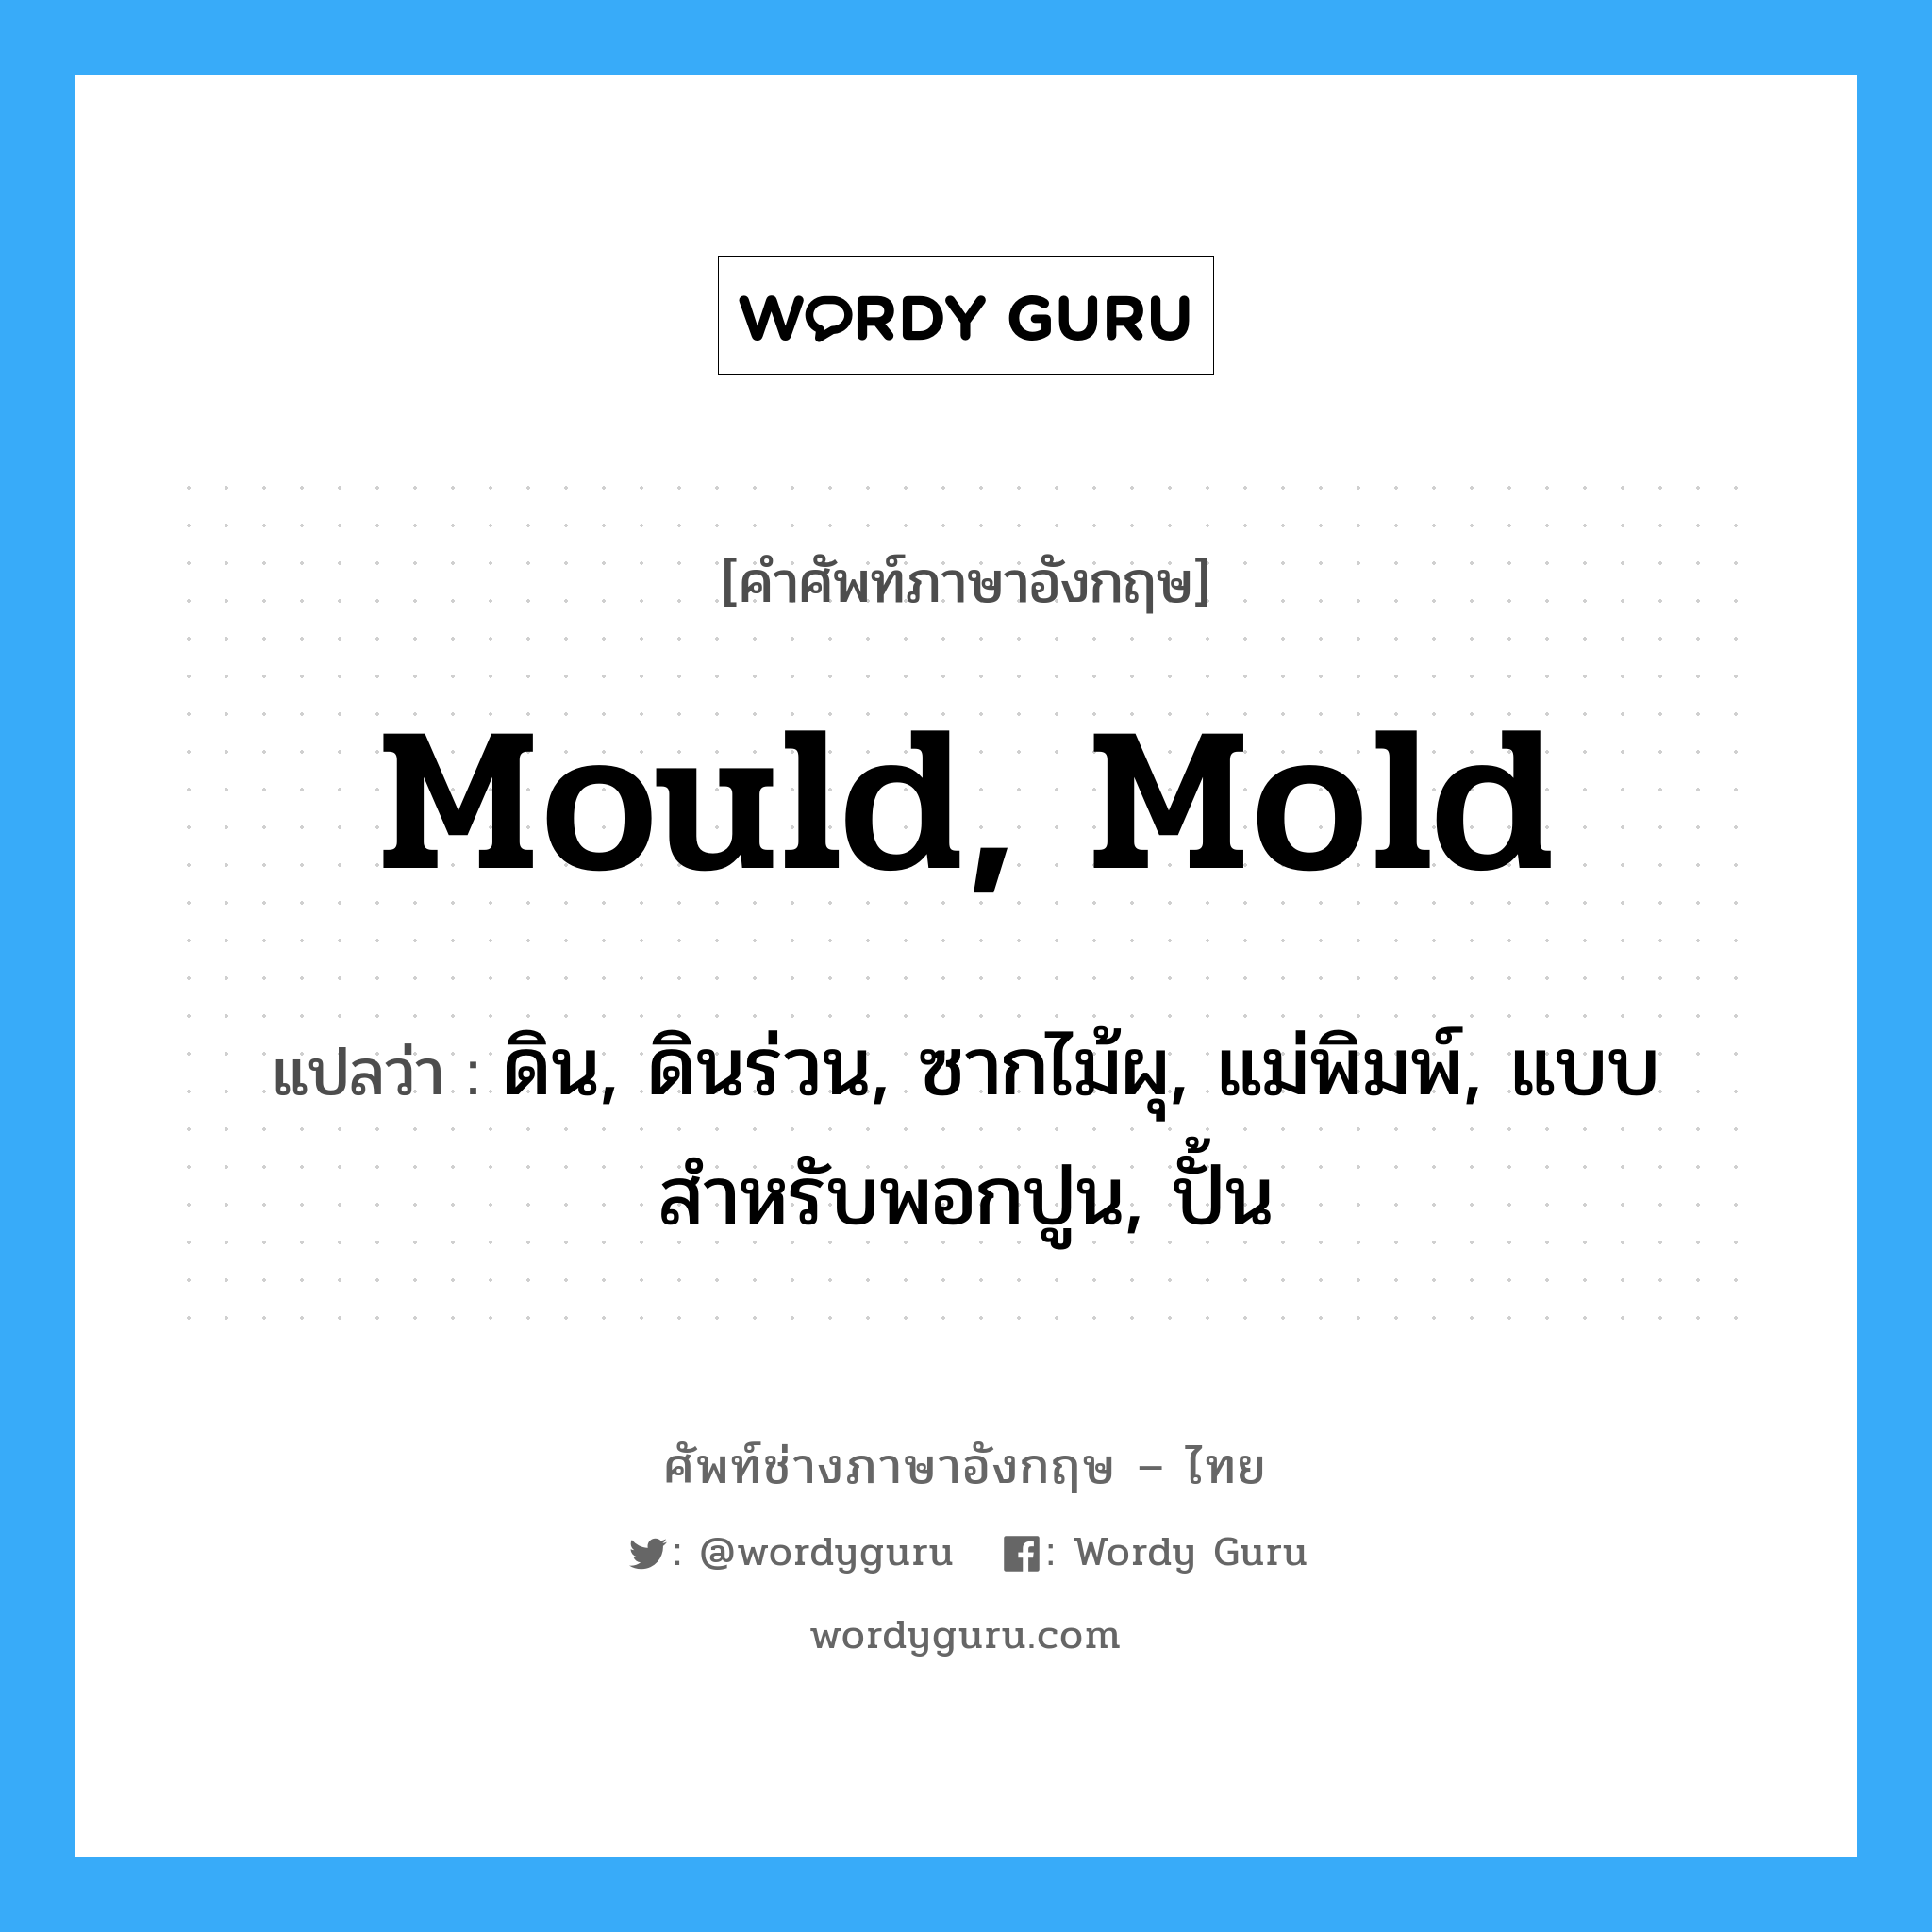 mould, mold แปลว่า?, คำศัพท์ช่างภาษาอังกฤษ - ไทย mould, mold คำศัพท์ภาษาอังกฤษ mould, mold แปลว่า ดิน, ดินร่วน, ซากไม้ผุ, แม่พิมพ์, แบบสำหรับพอกปูน, ปั้น